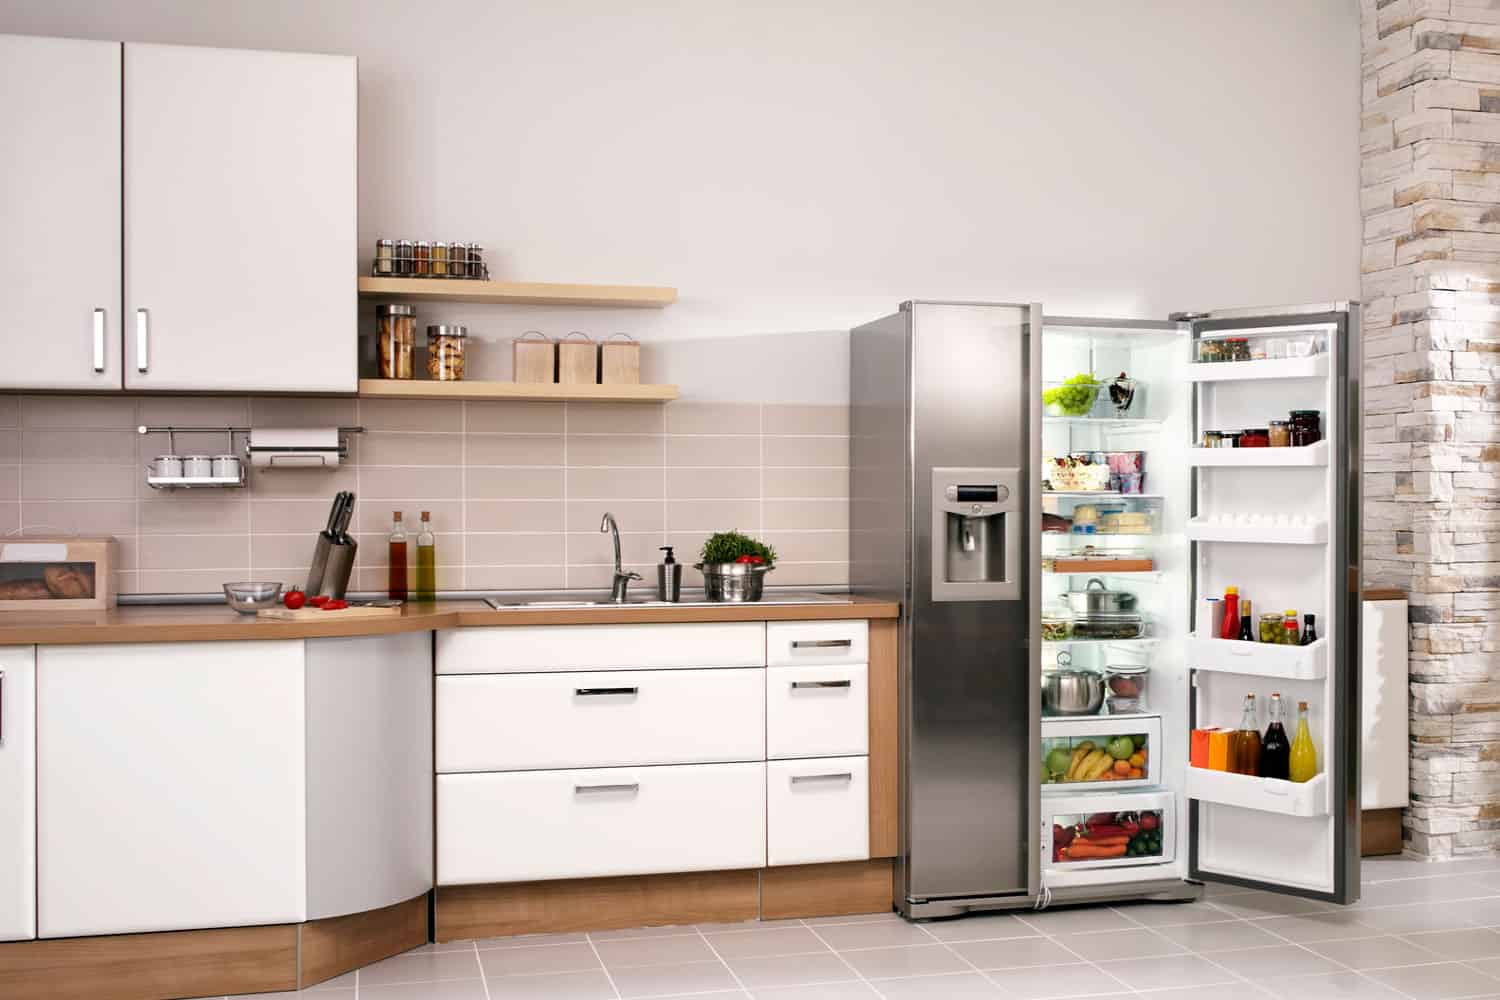 一个有冰bd手机下载箱和橱柜的现代家庭的大厨房，一个标准冰箱的平均体积是多少?＂width=